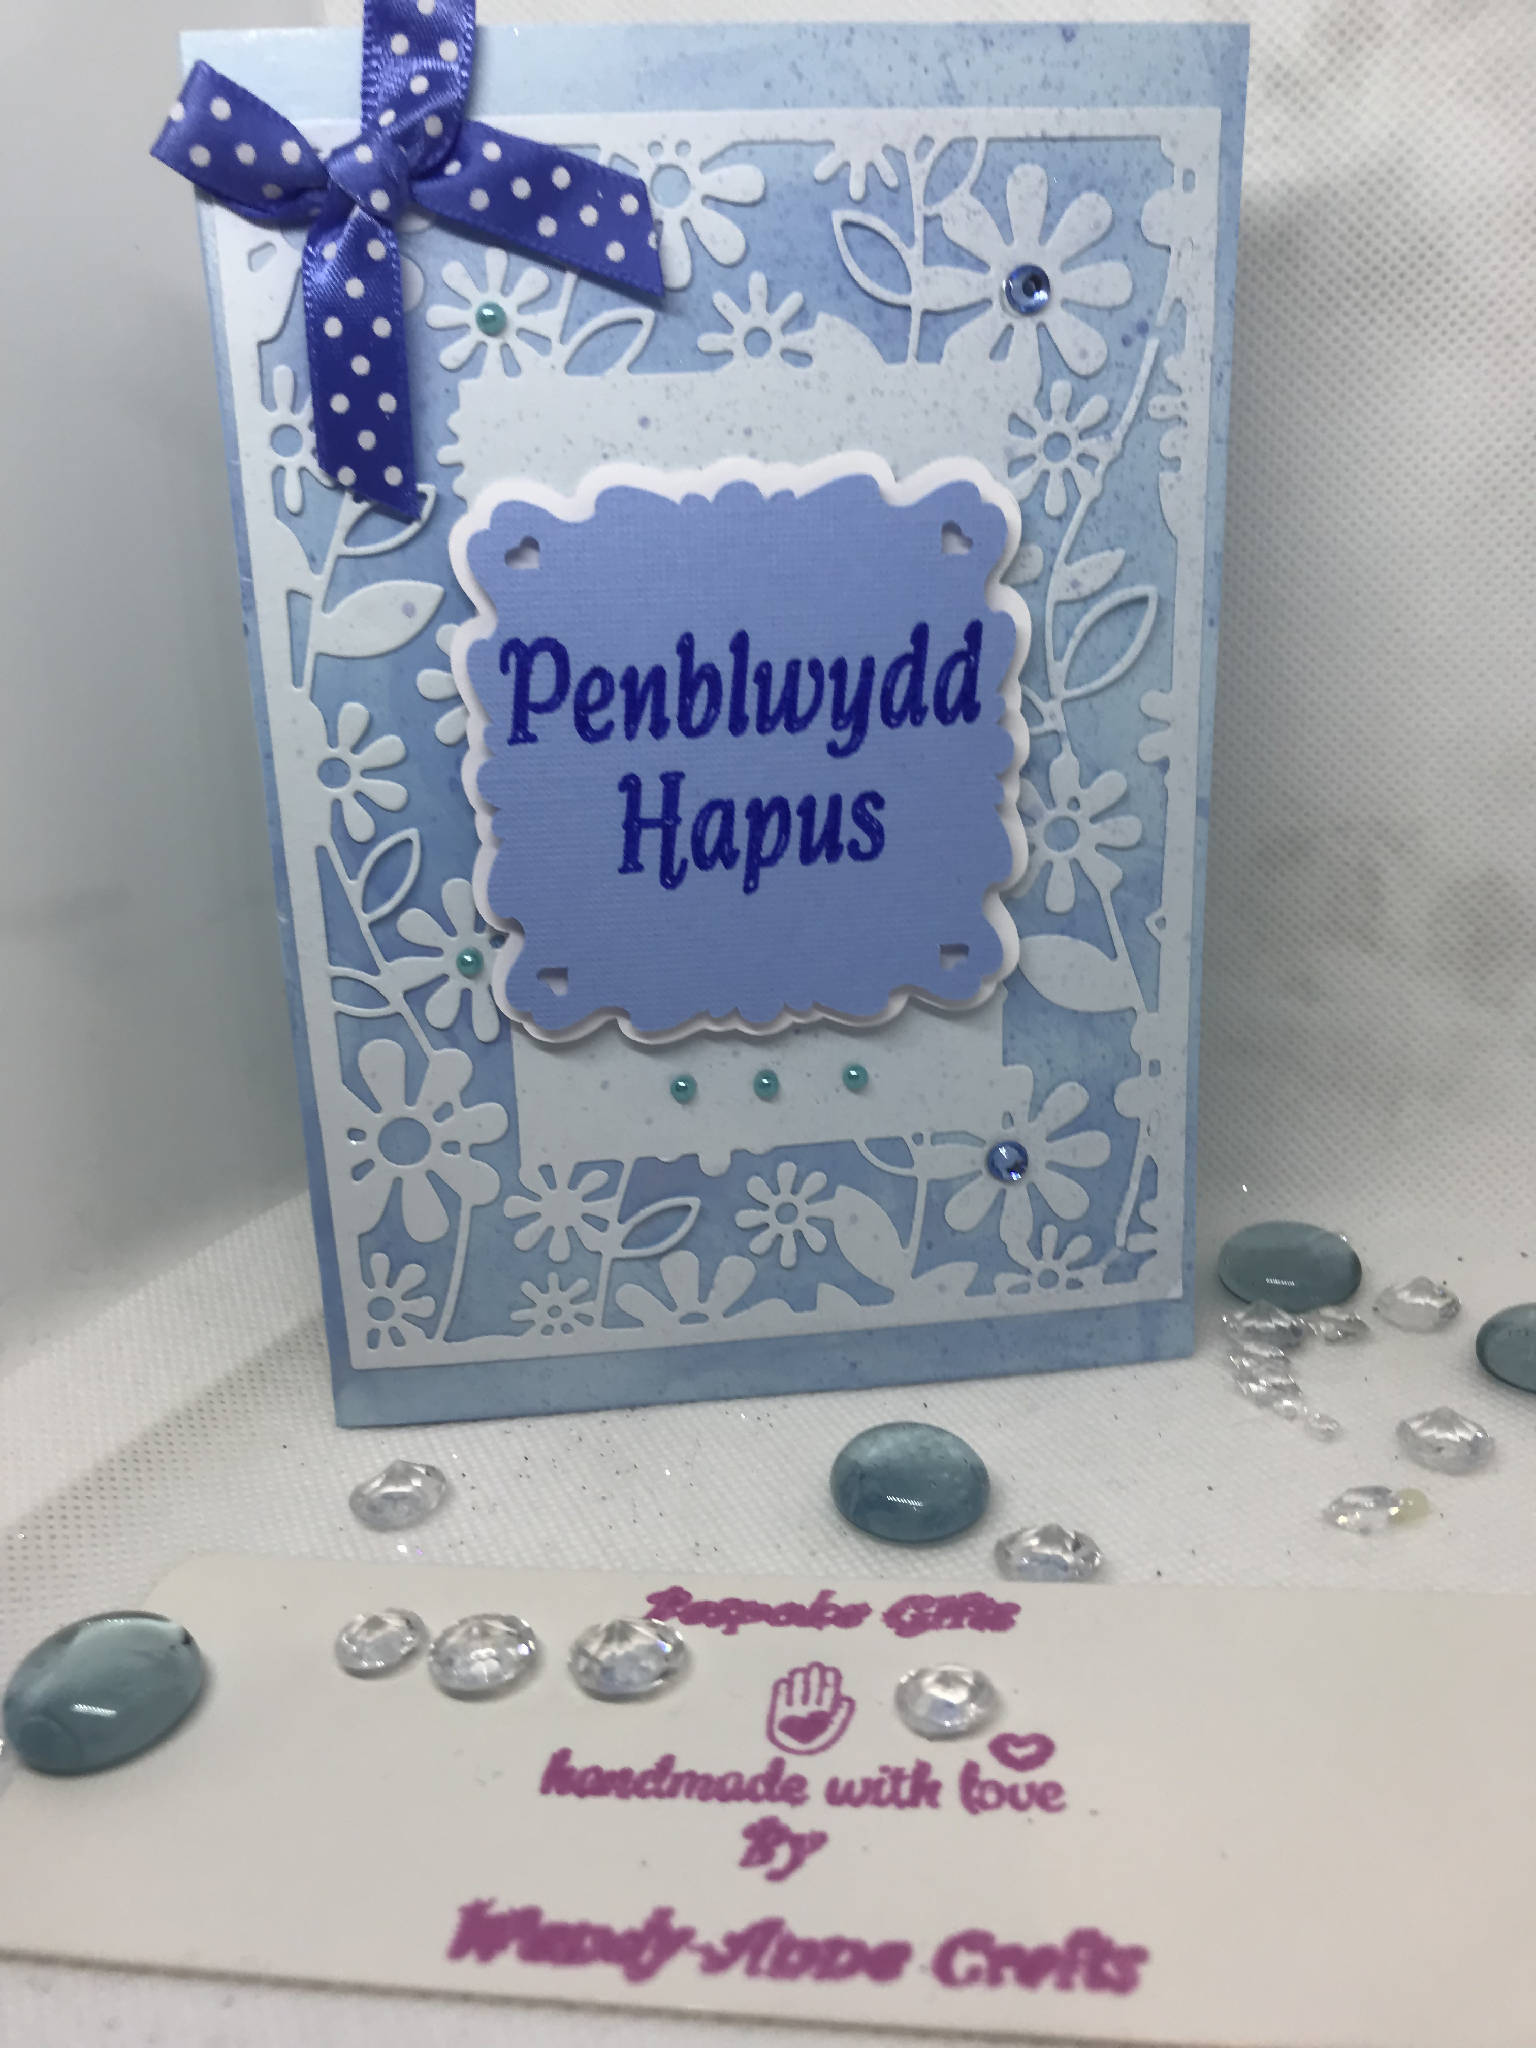 Lovely birthday card Penblwydd Hapus